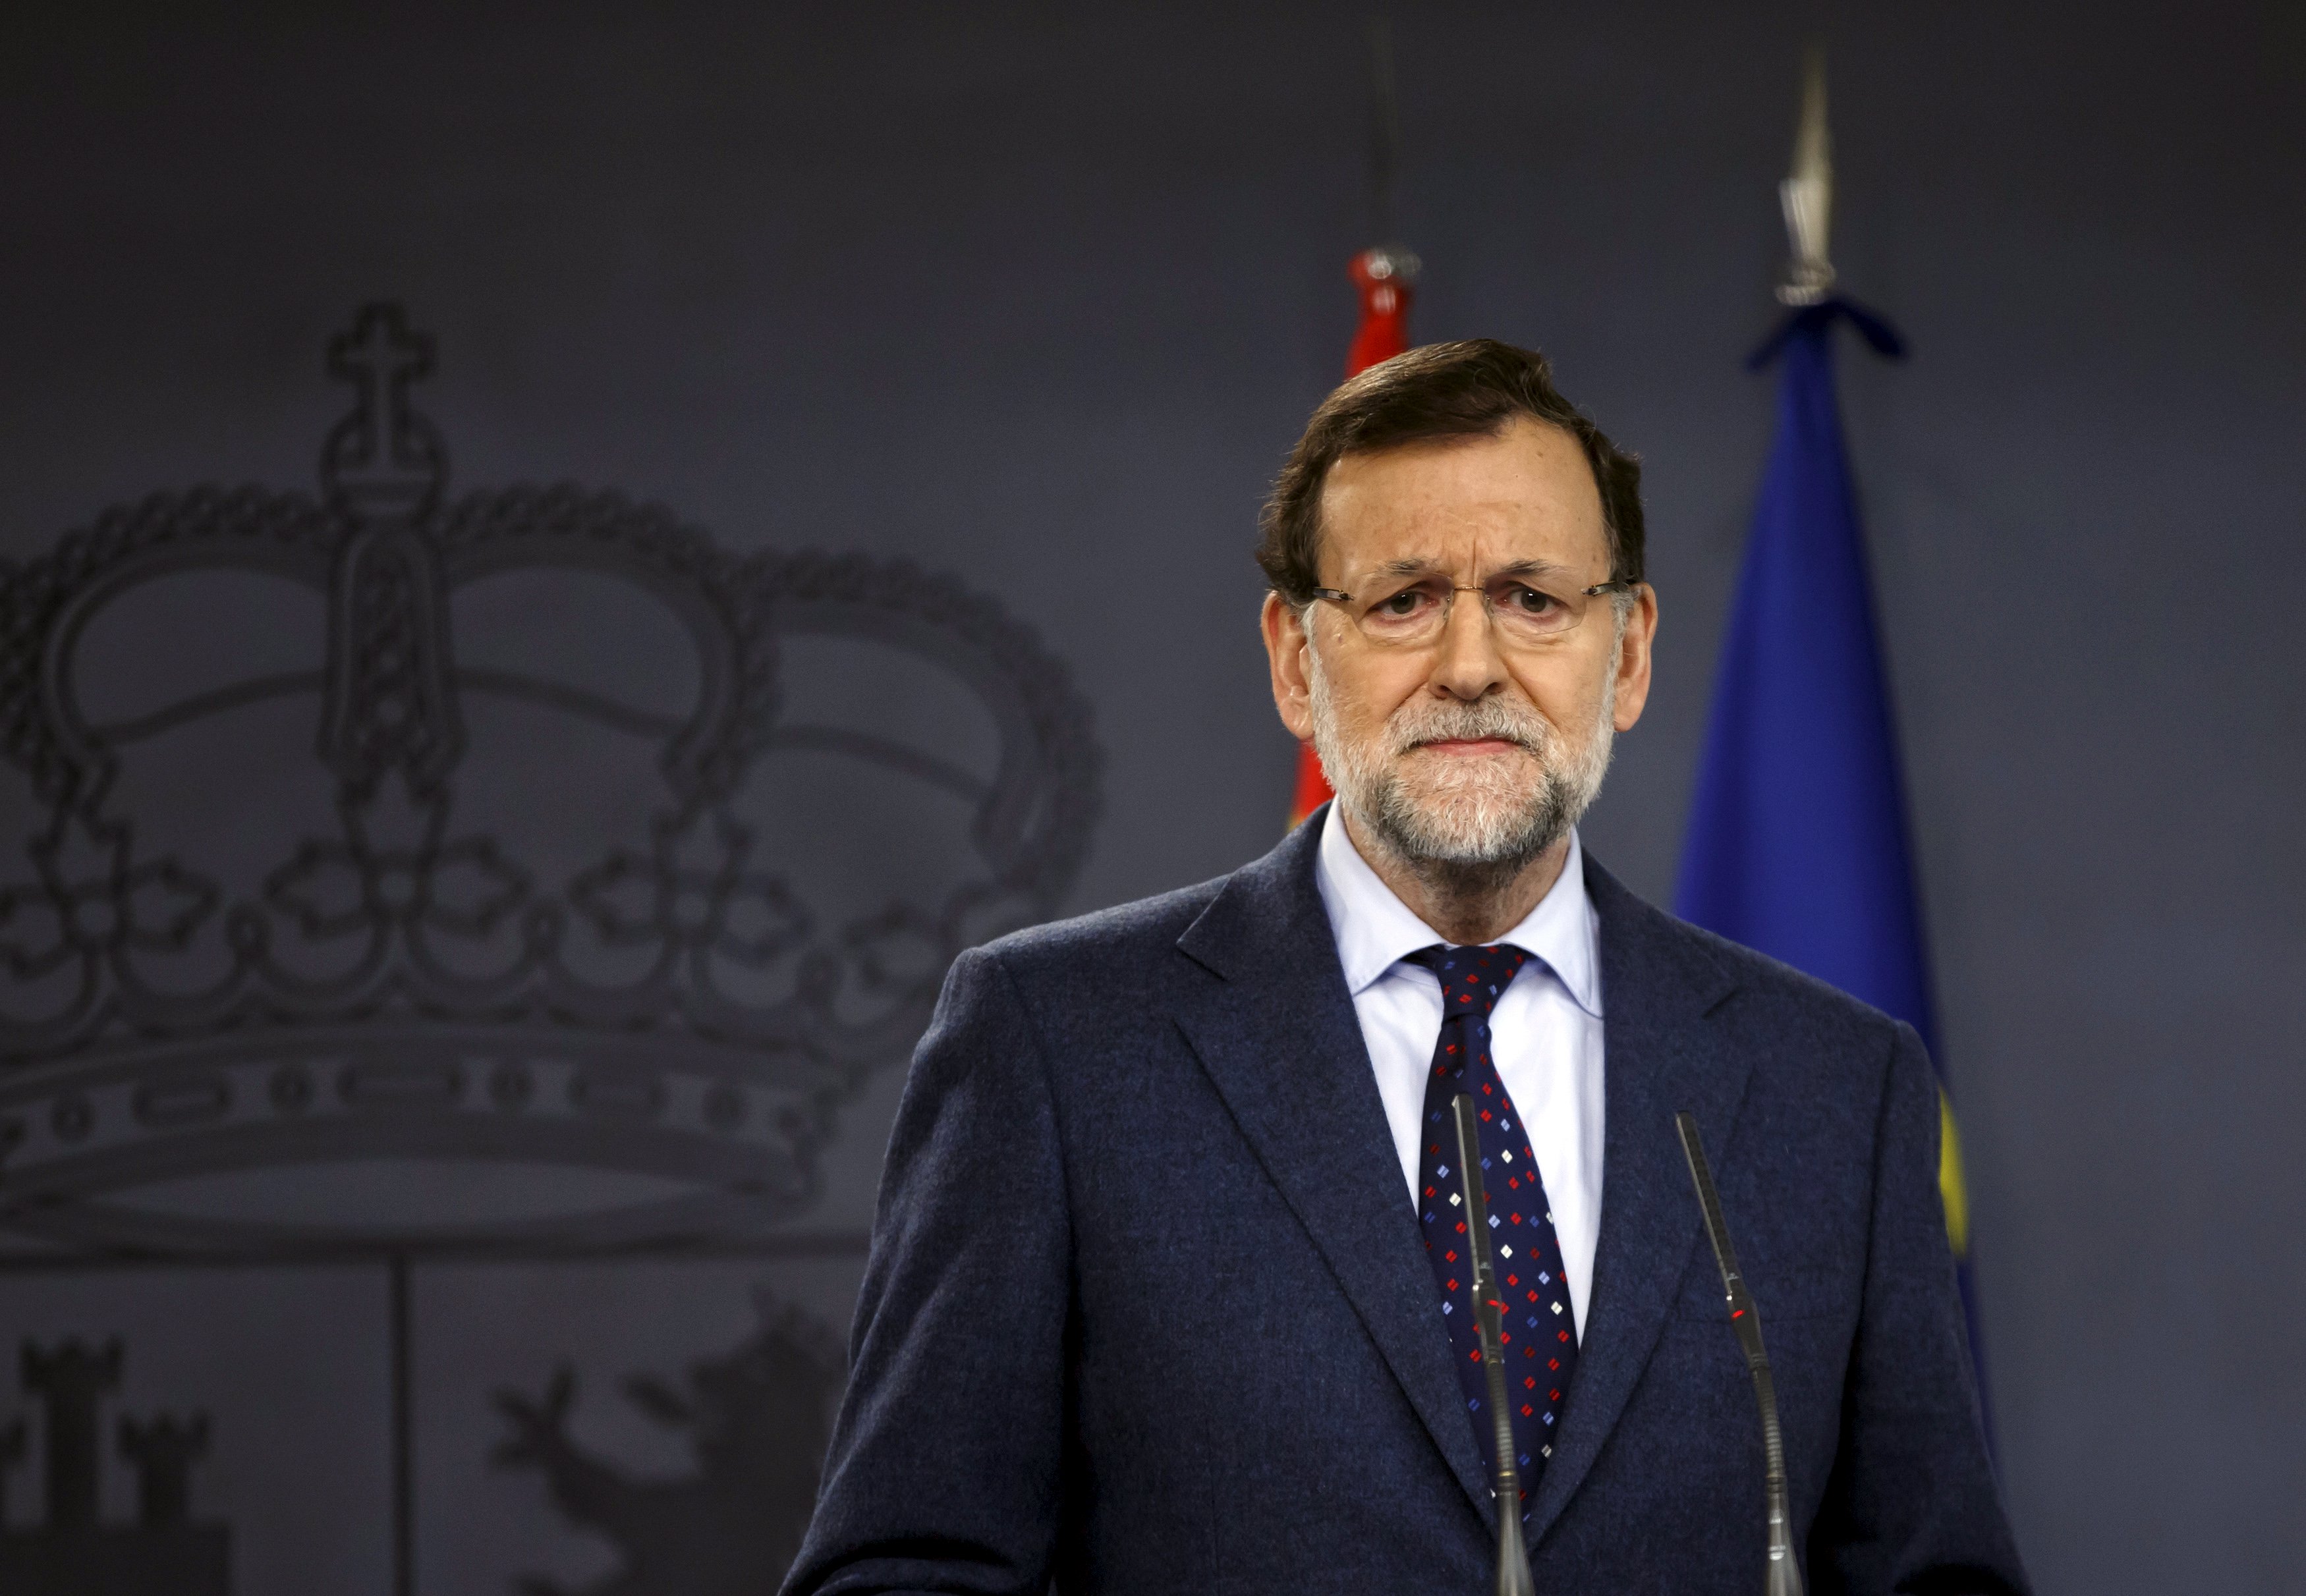 España espera mantener relaciones “constructivas” con Venezuela y rechaza amenazas